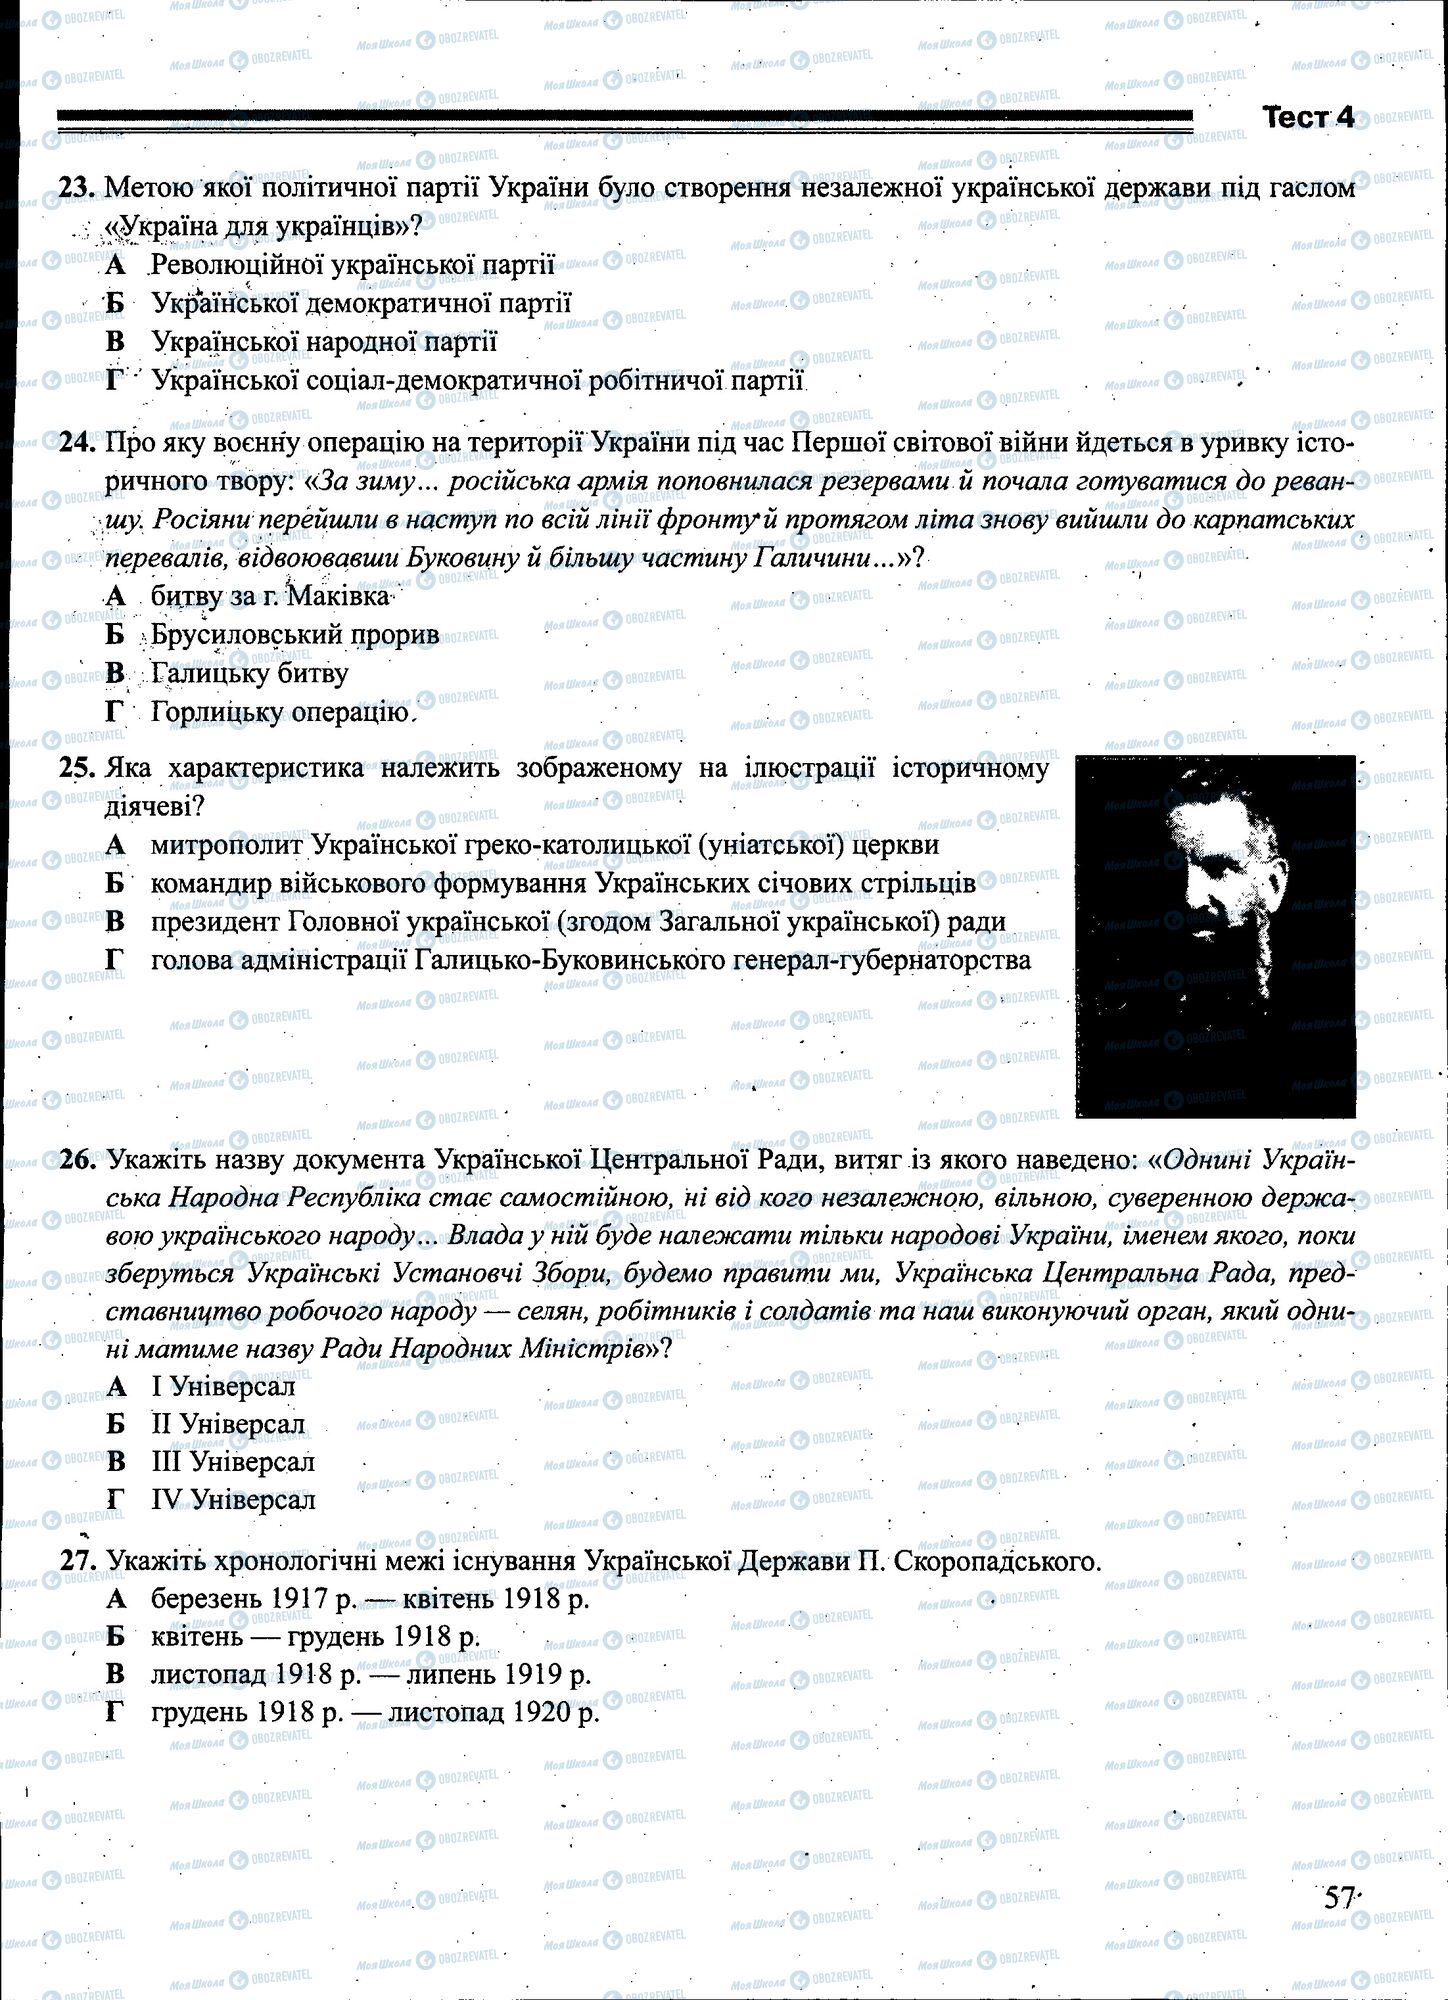 ЗНО История Украины 11 класс страница 057